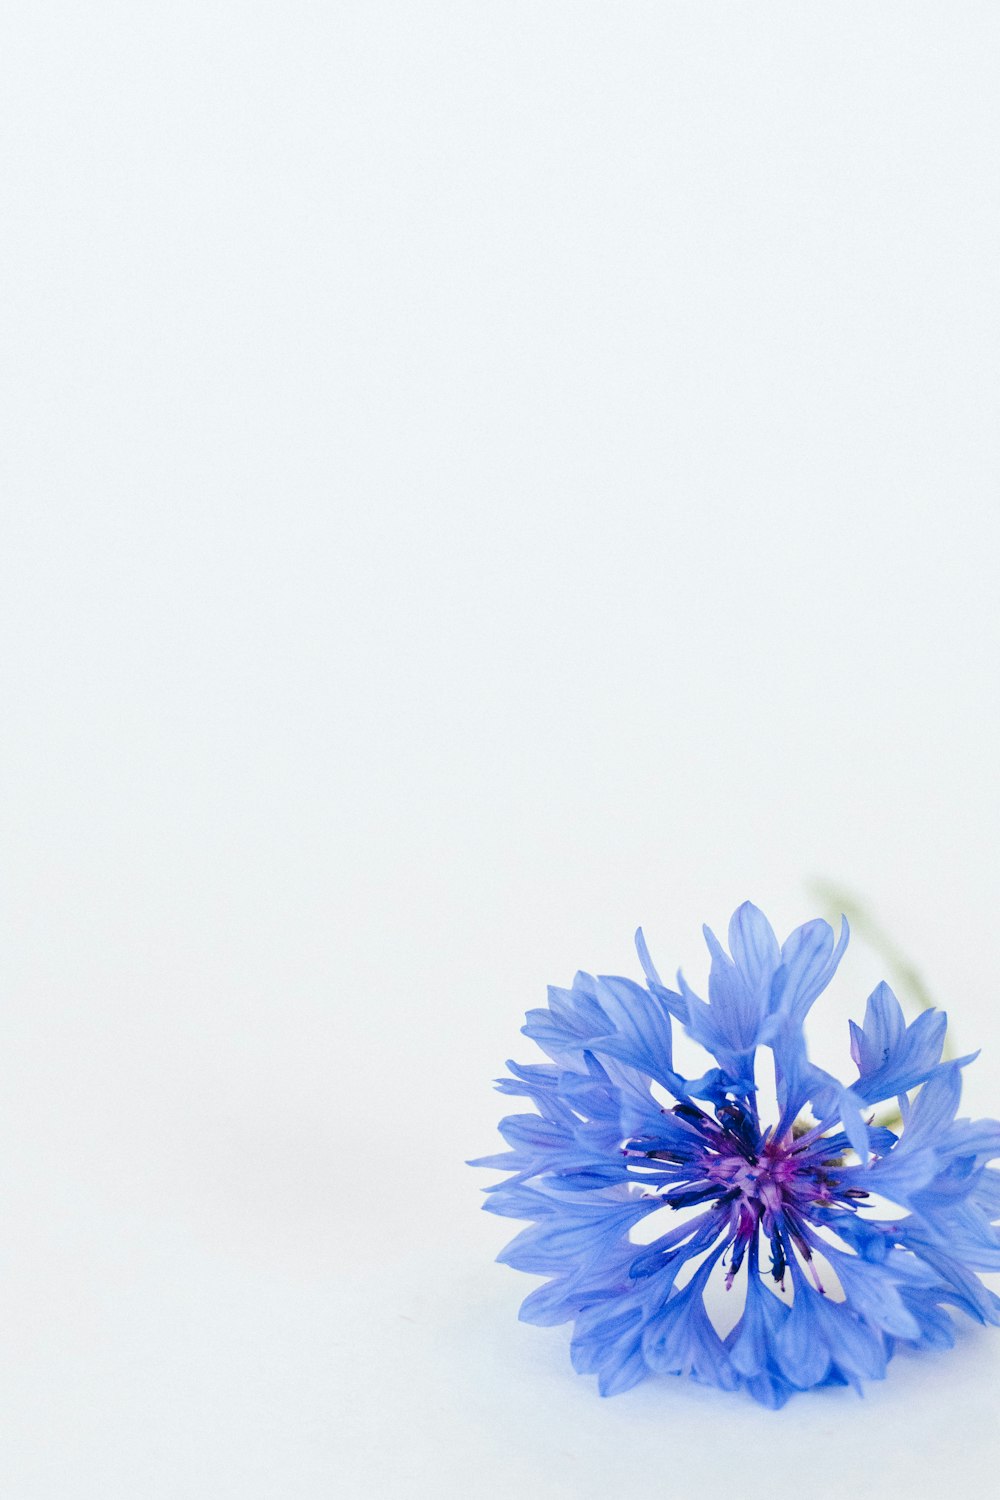 fiore blu su sfondo bianco